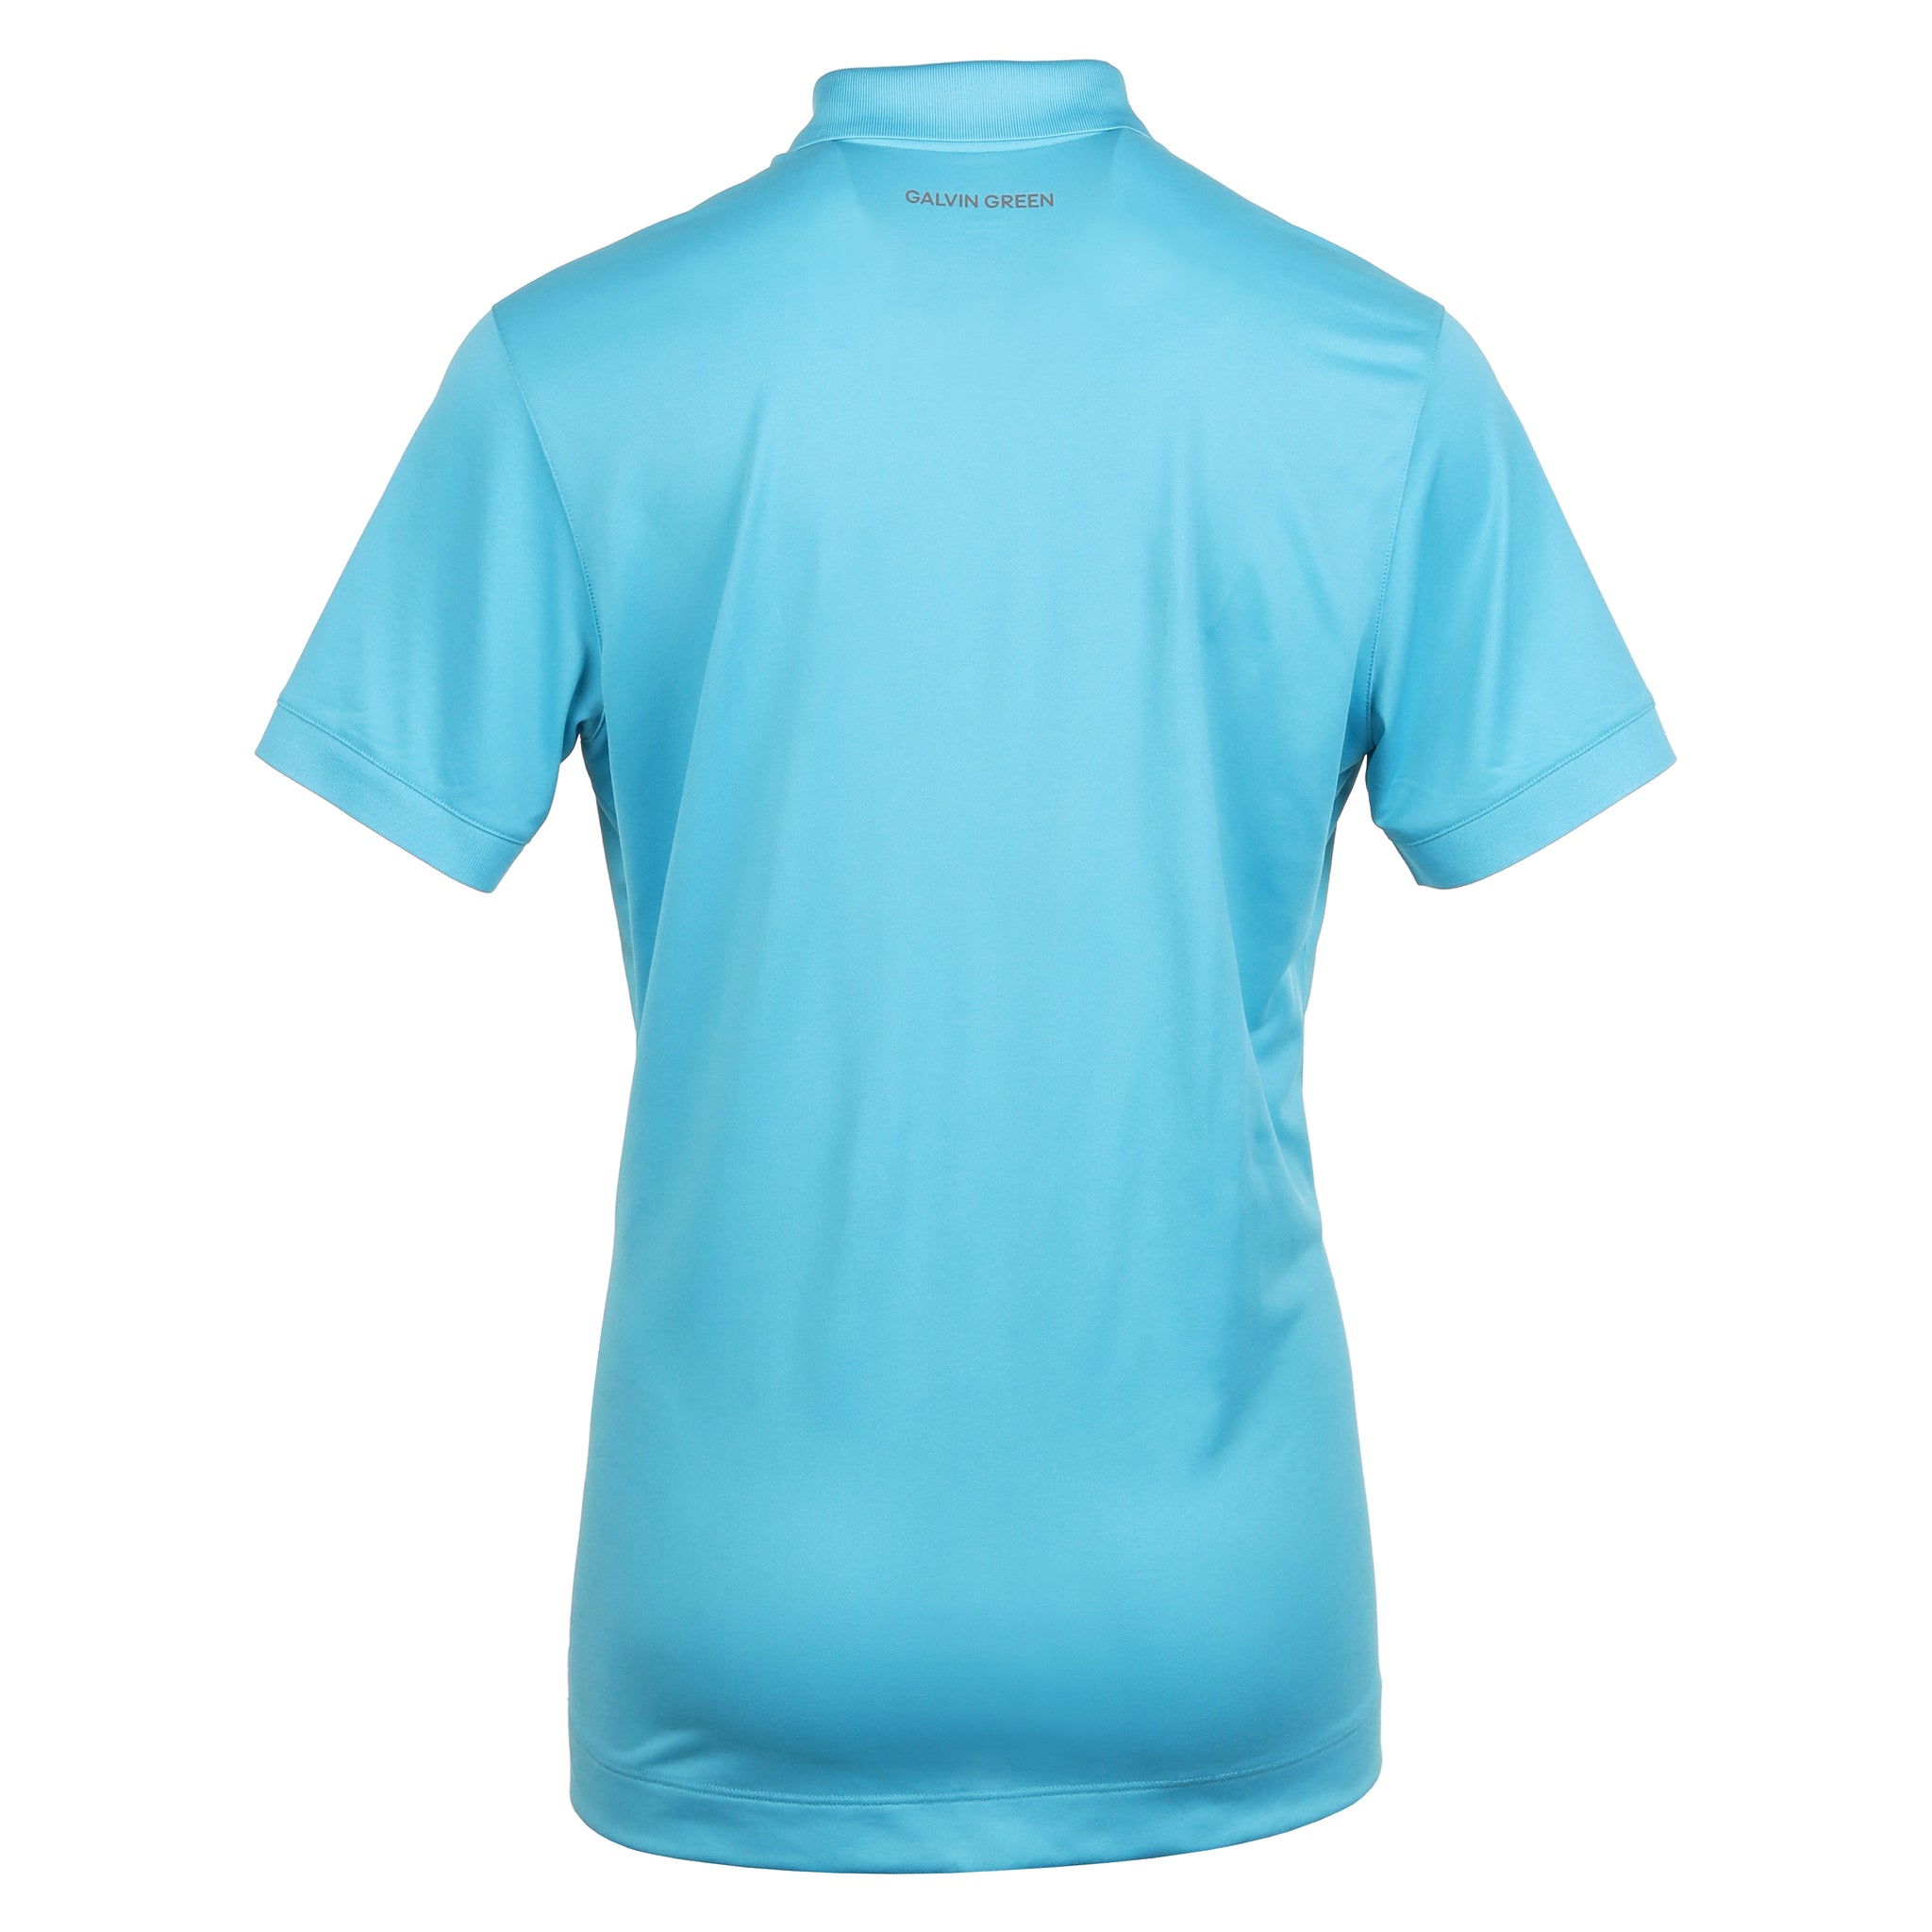 galvin-green-maximilian-ventil8-golf-shirt-aqua-9373